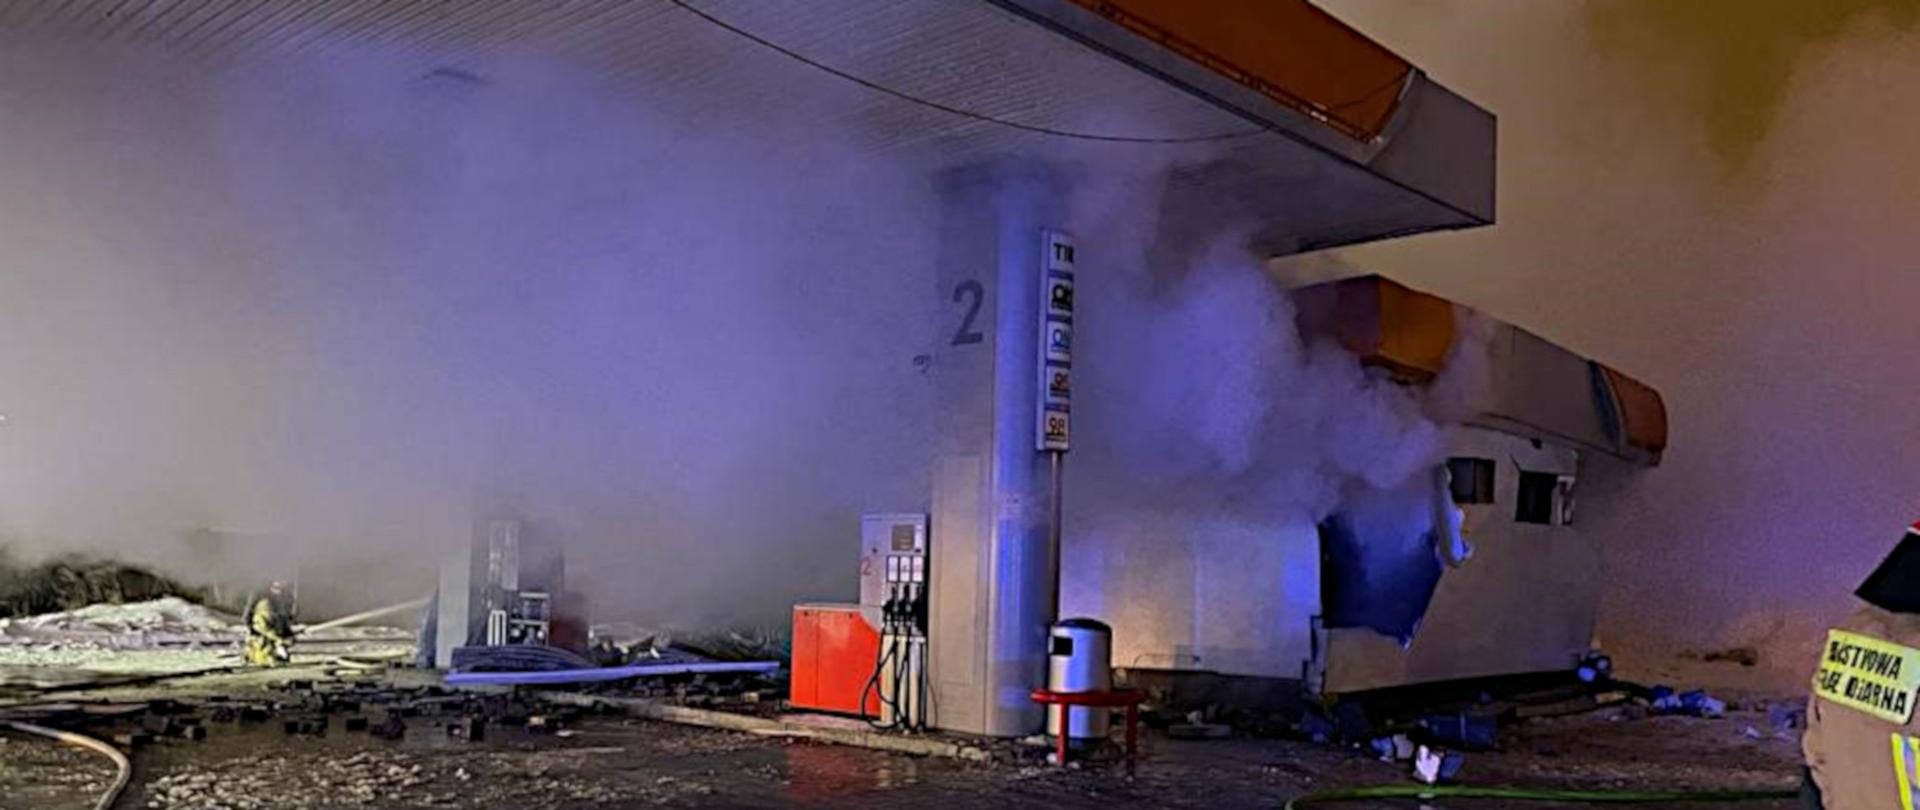 Zdjęcie przedstawia stację paliw i widoczne uszkodzenia budynku na skutek wybuchu. W tle widoczny strażaka w ubrani specjalnym i hełmie, gaszący pożar z prądownicy.